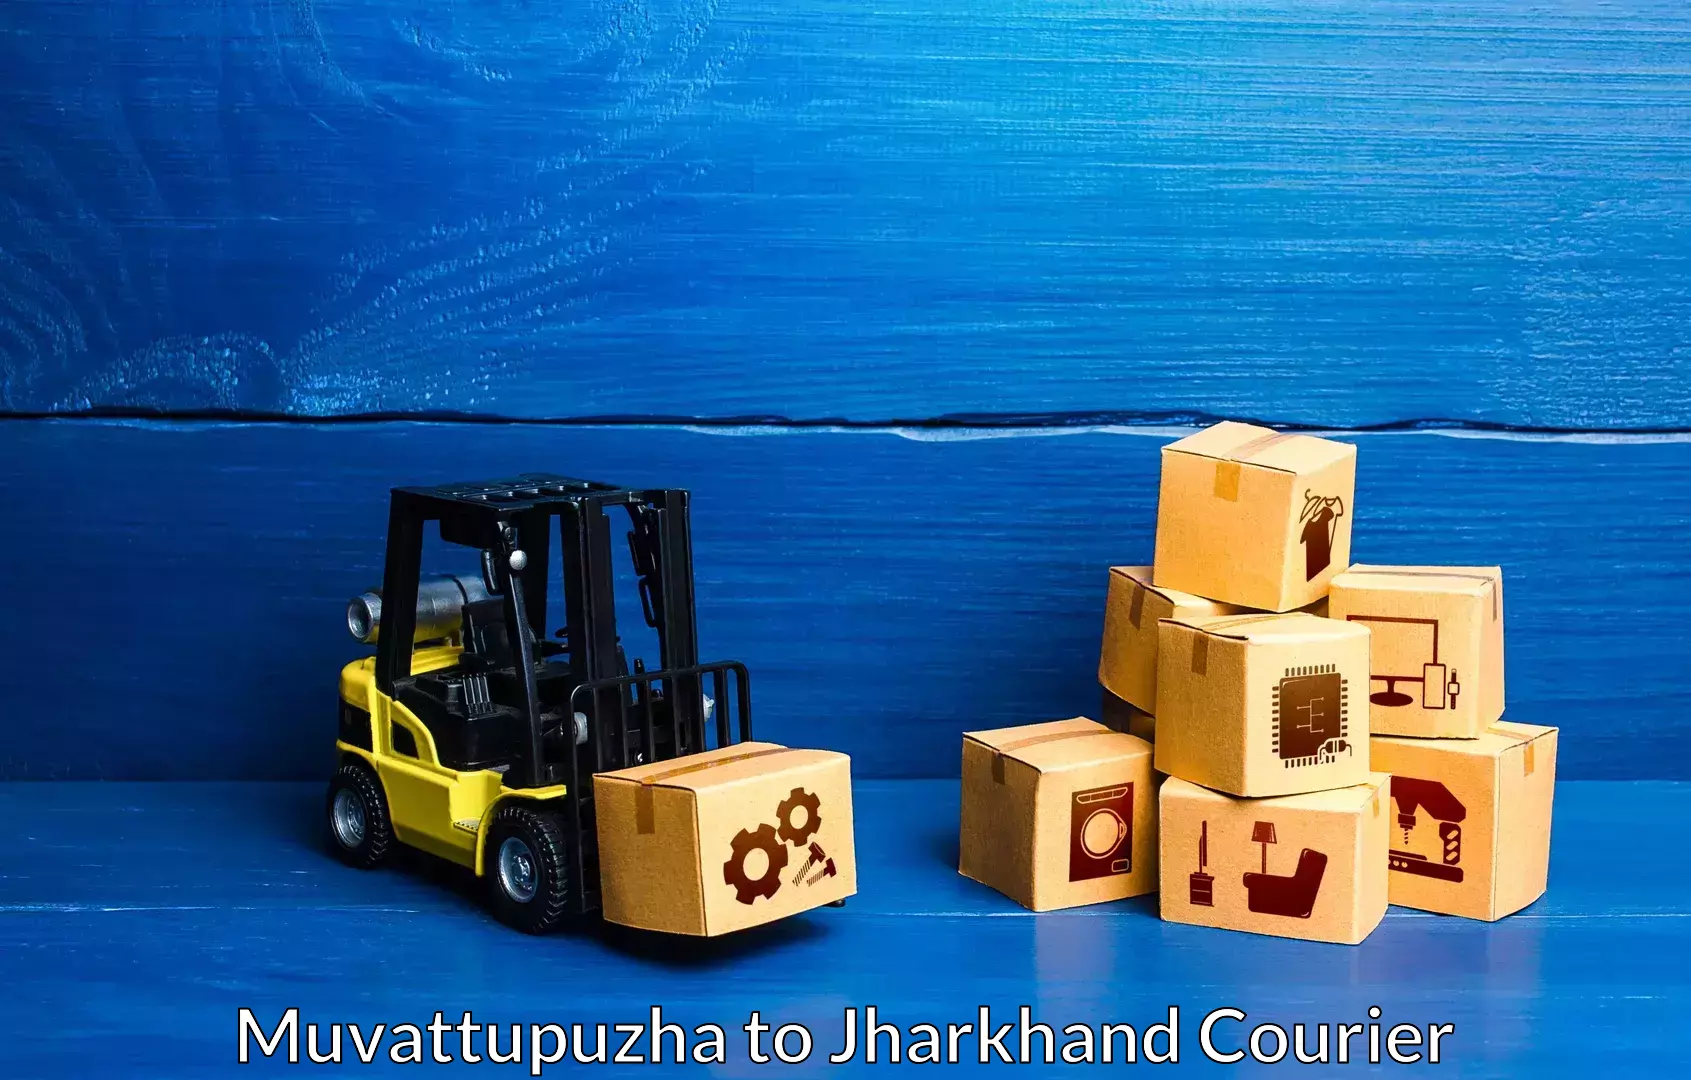 Furniture delivery service Muvattupuzha to Palamu